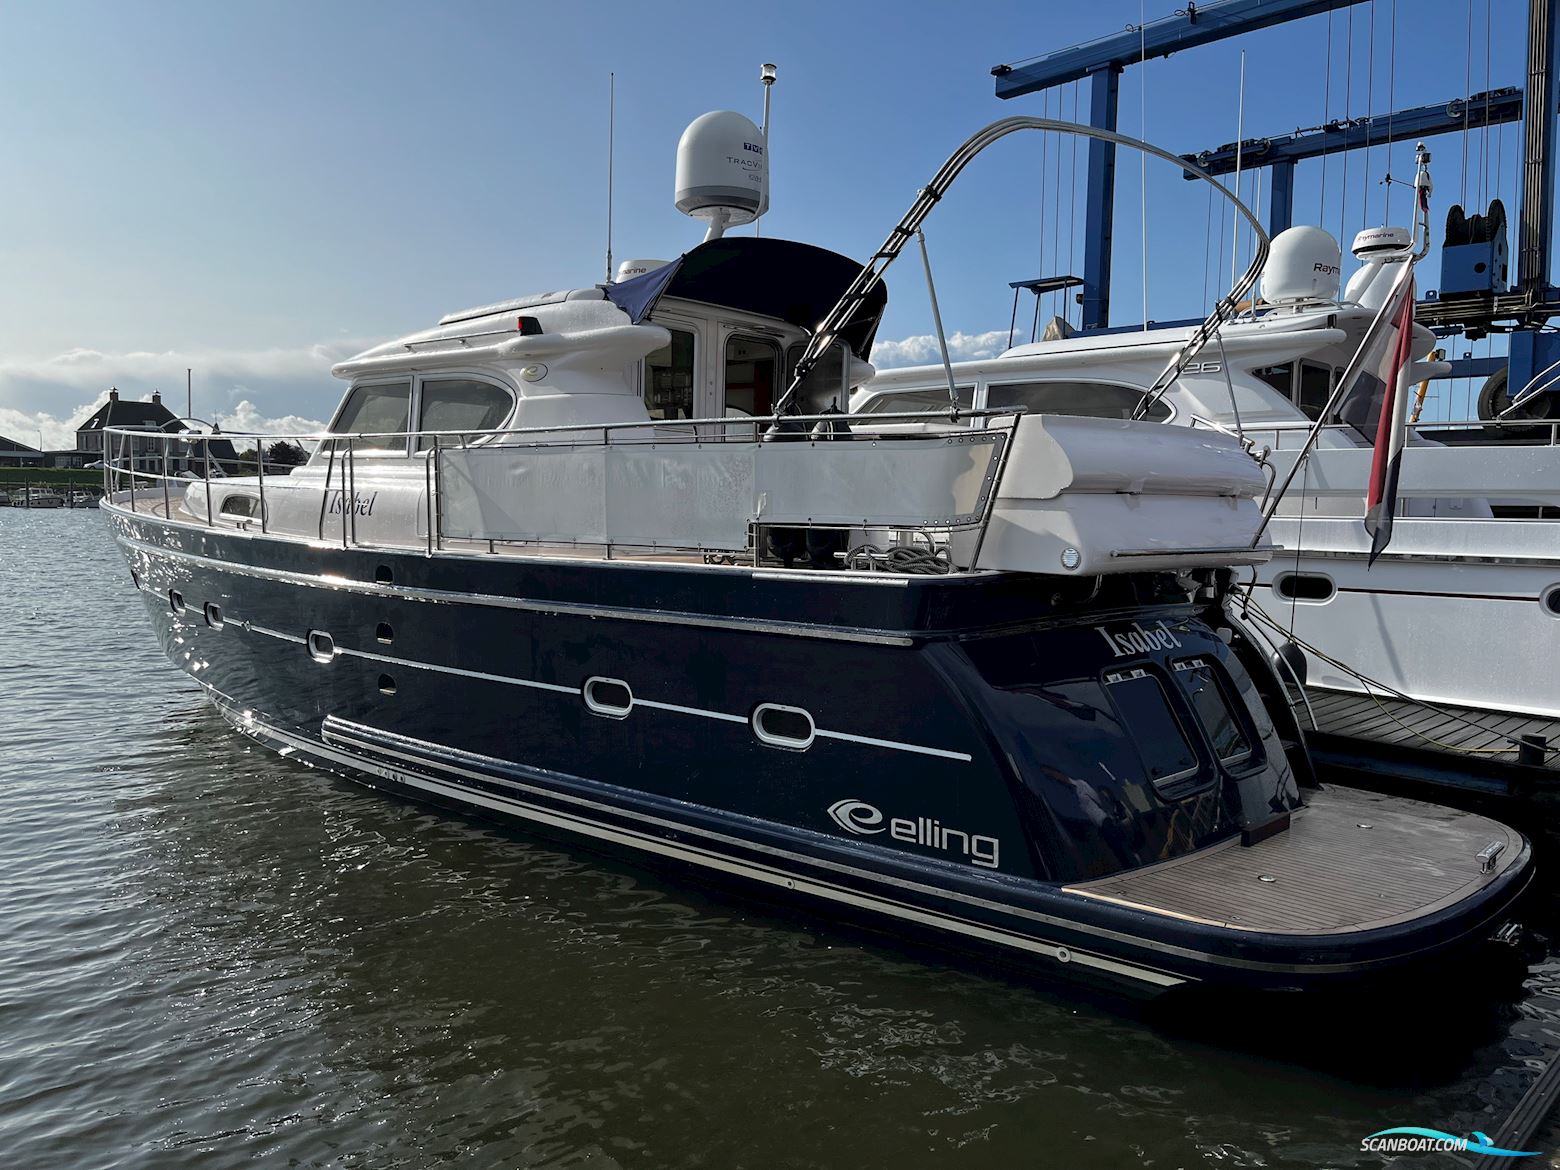 Elling E4 Ultimate (Stabiliser) Motorboot 2019, mit Volvo Penta motor, Niederlande